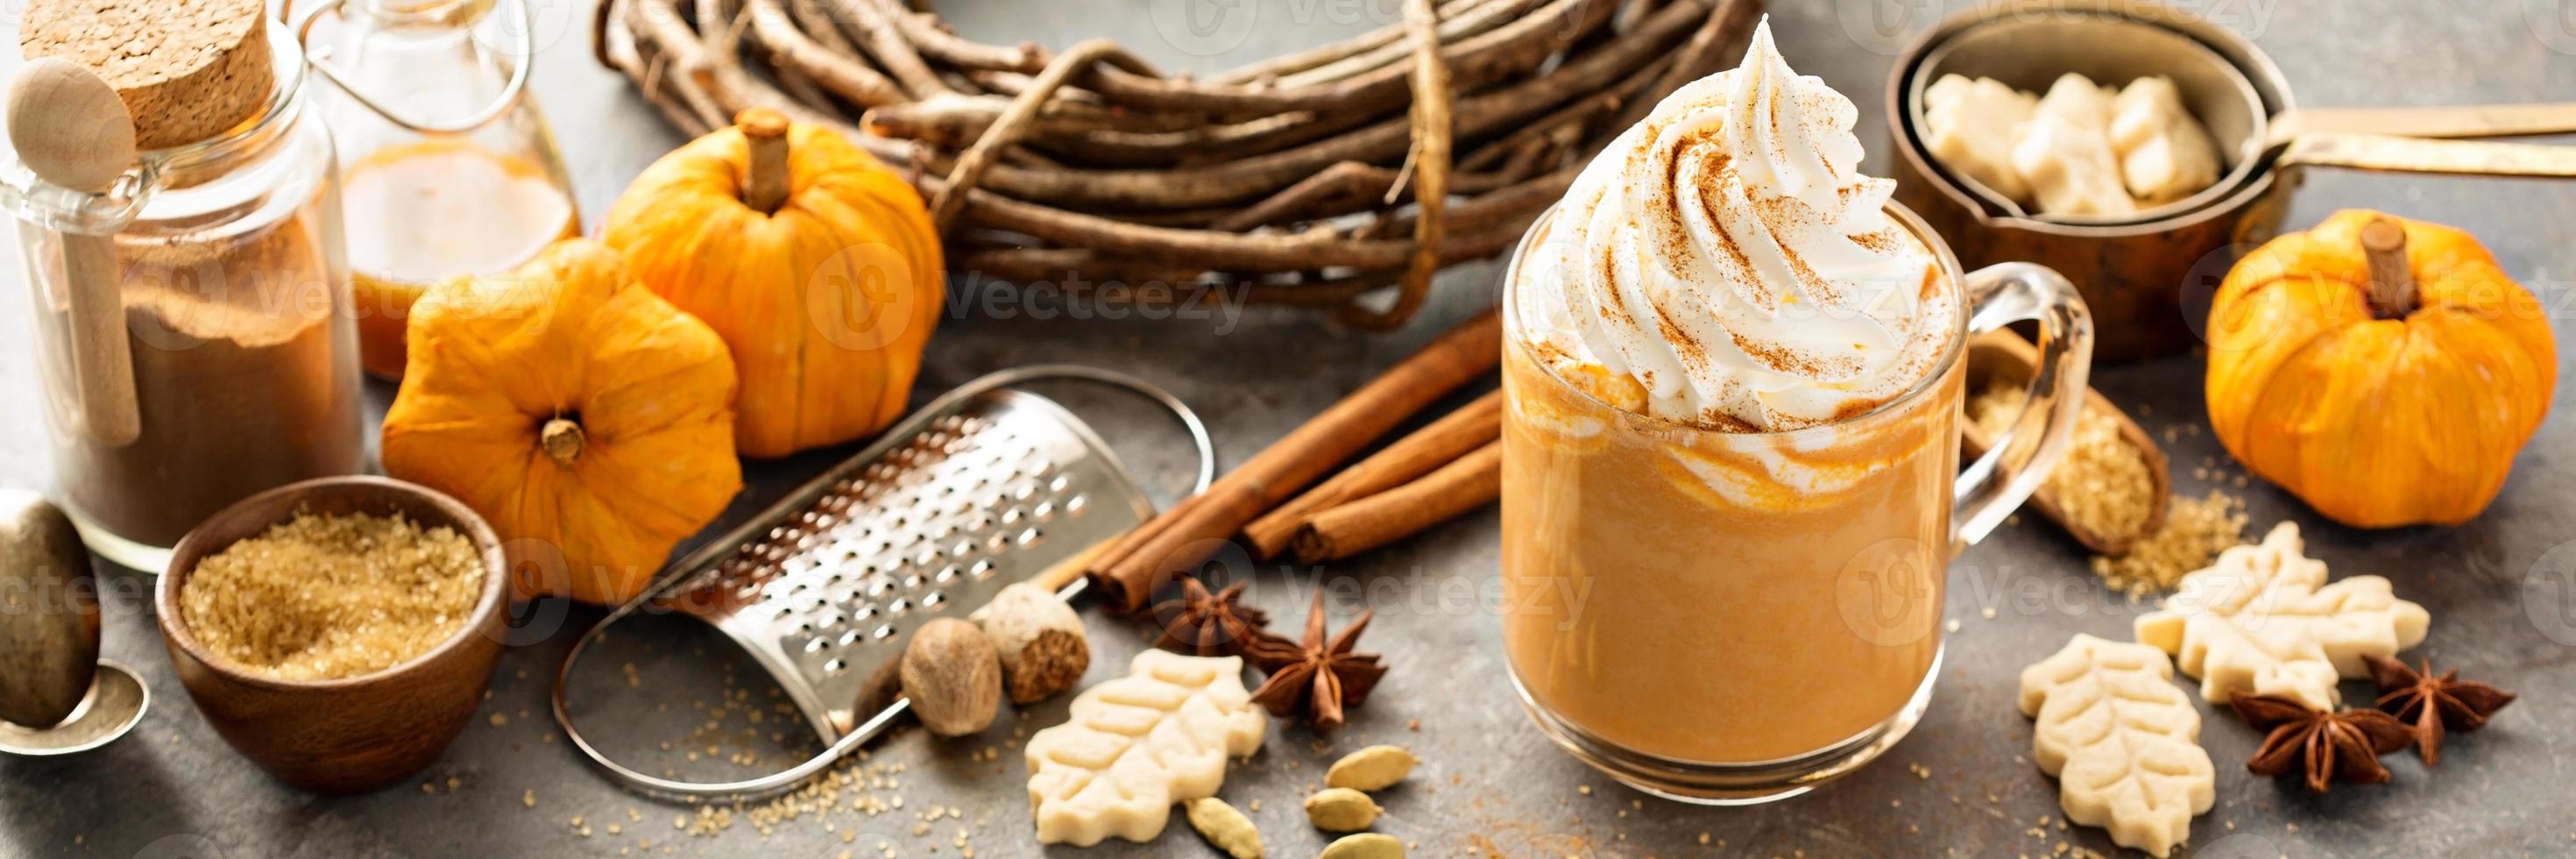 Pumpkin spice latte in a glass mug photo